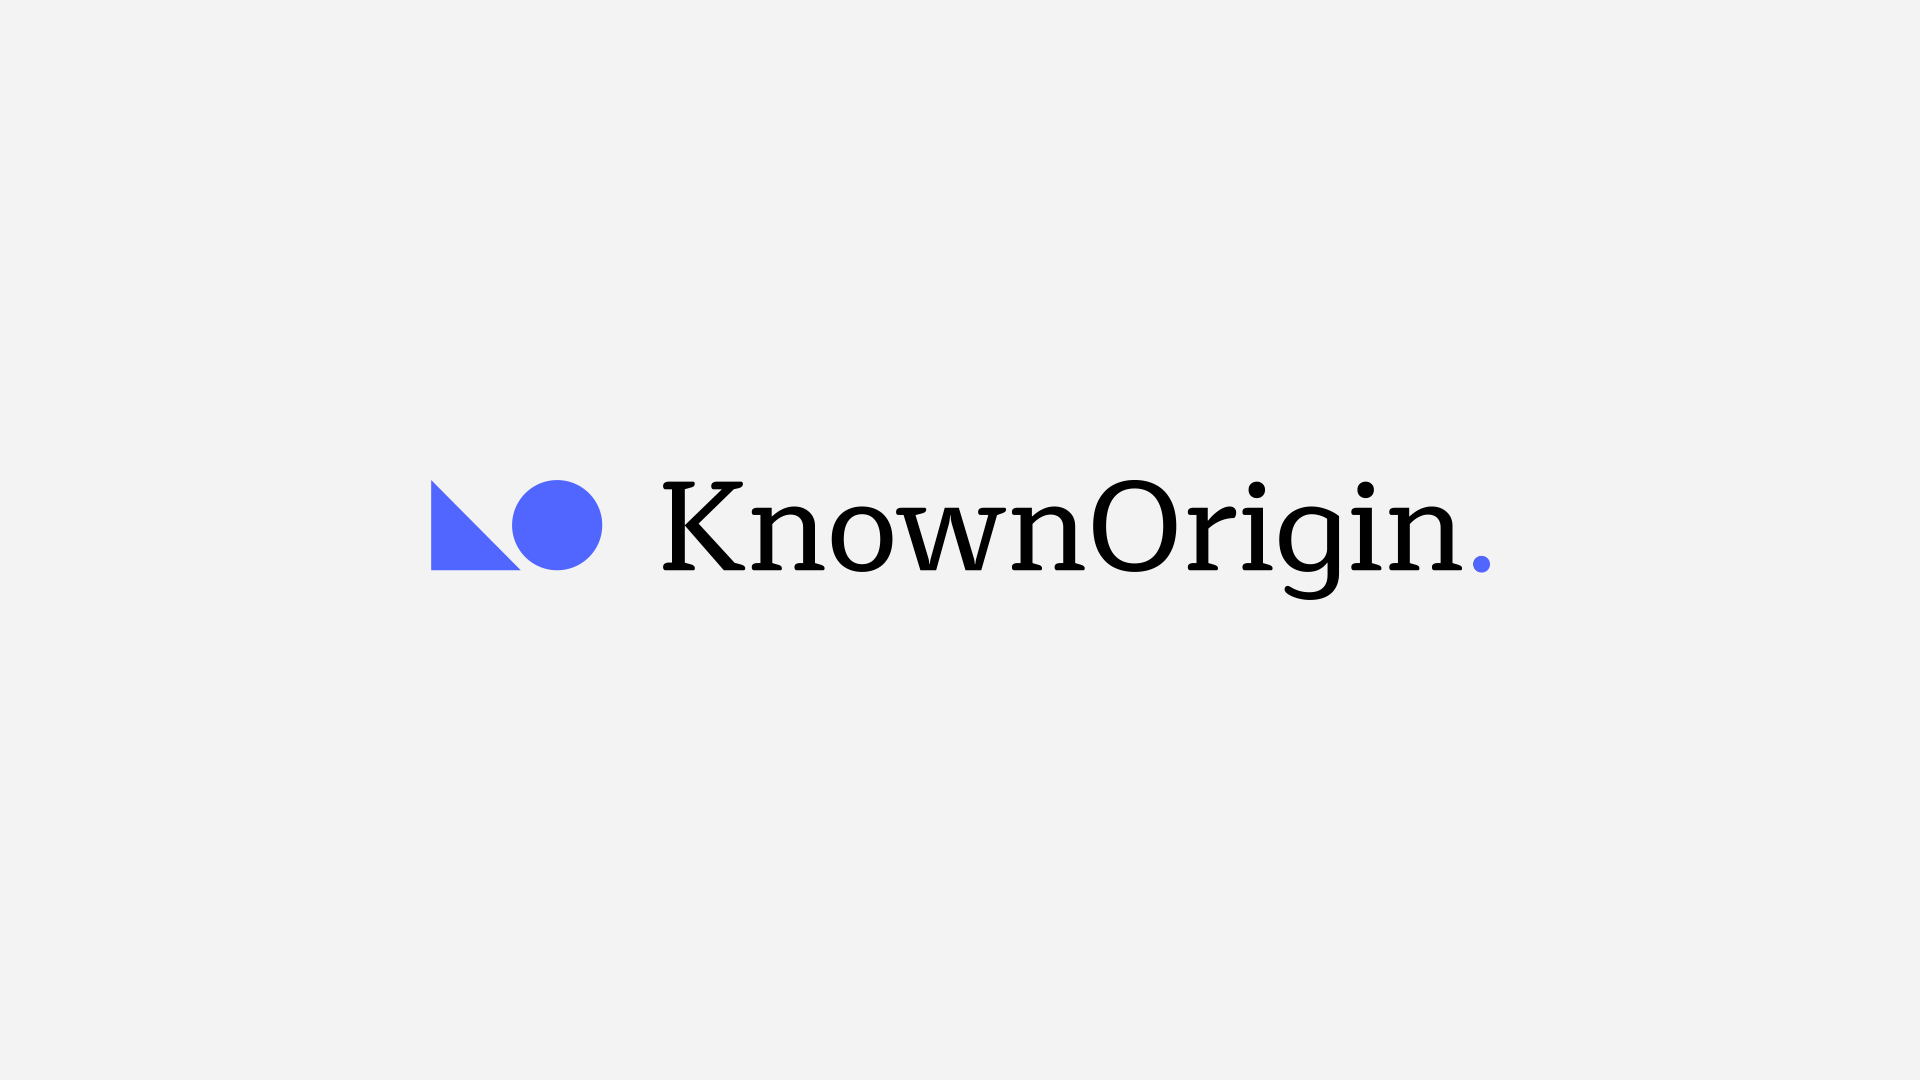 Known Origin